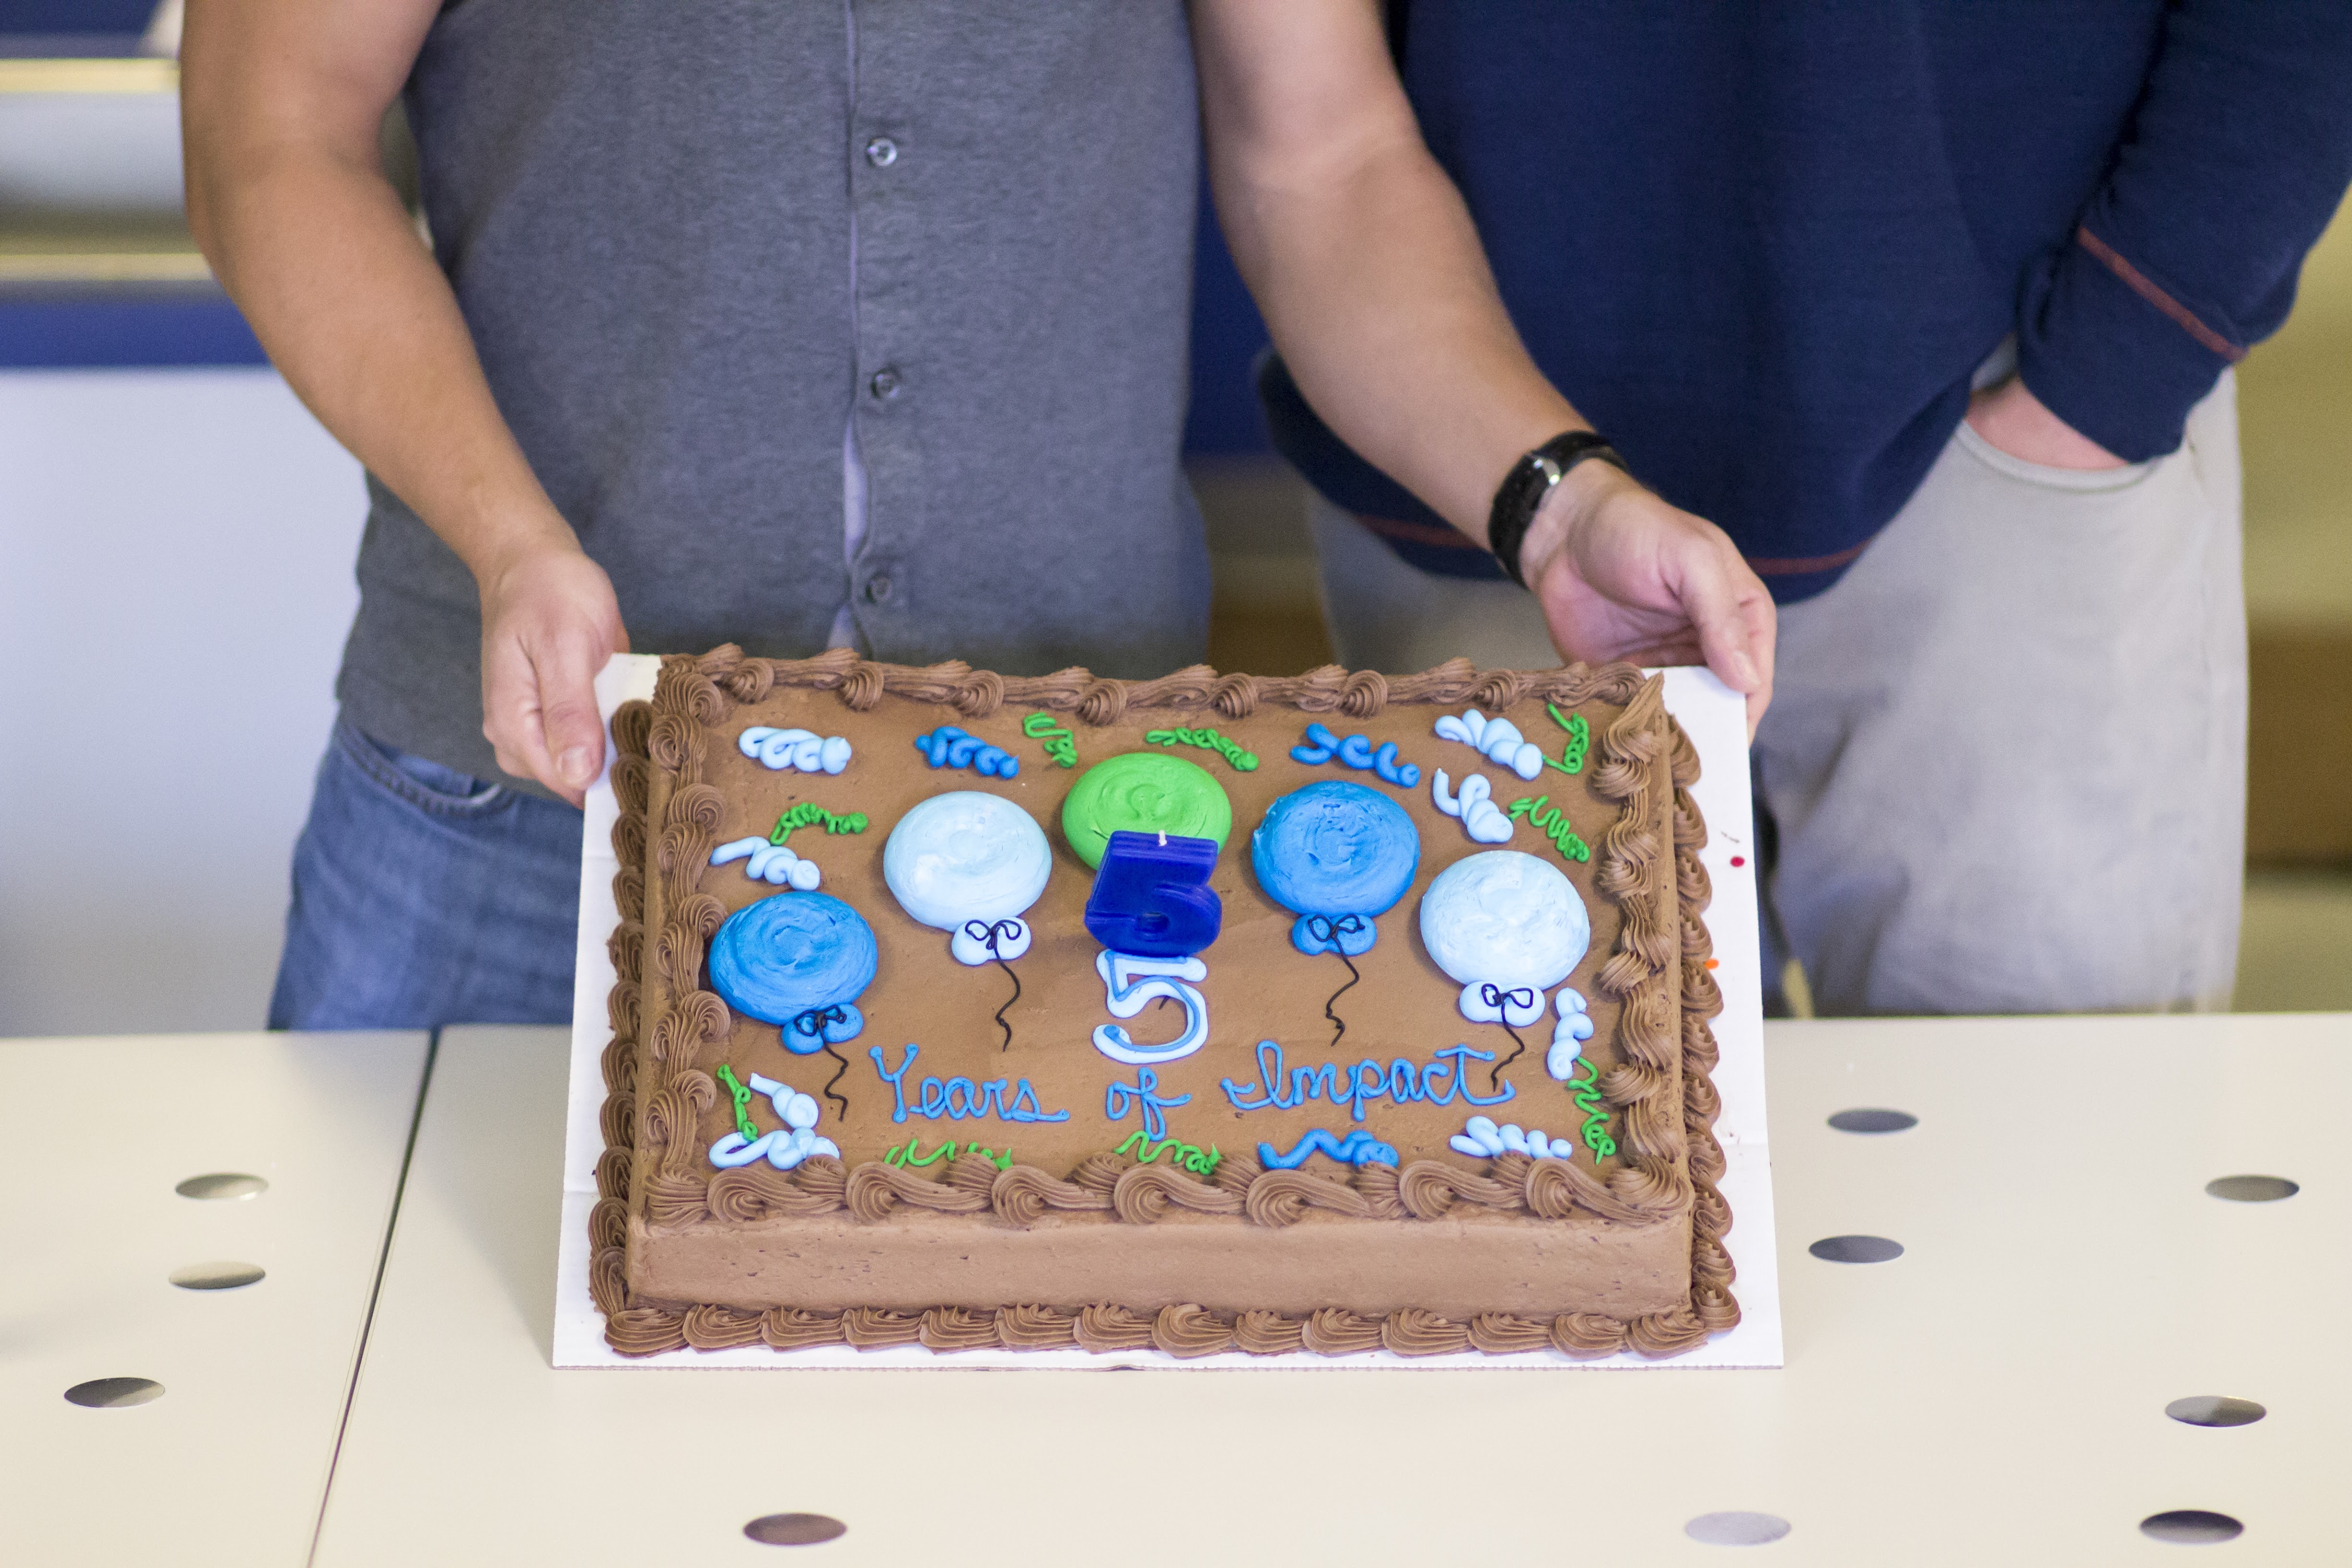 5 Years of Impact Go Local Birthday cake